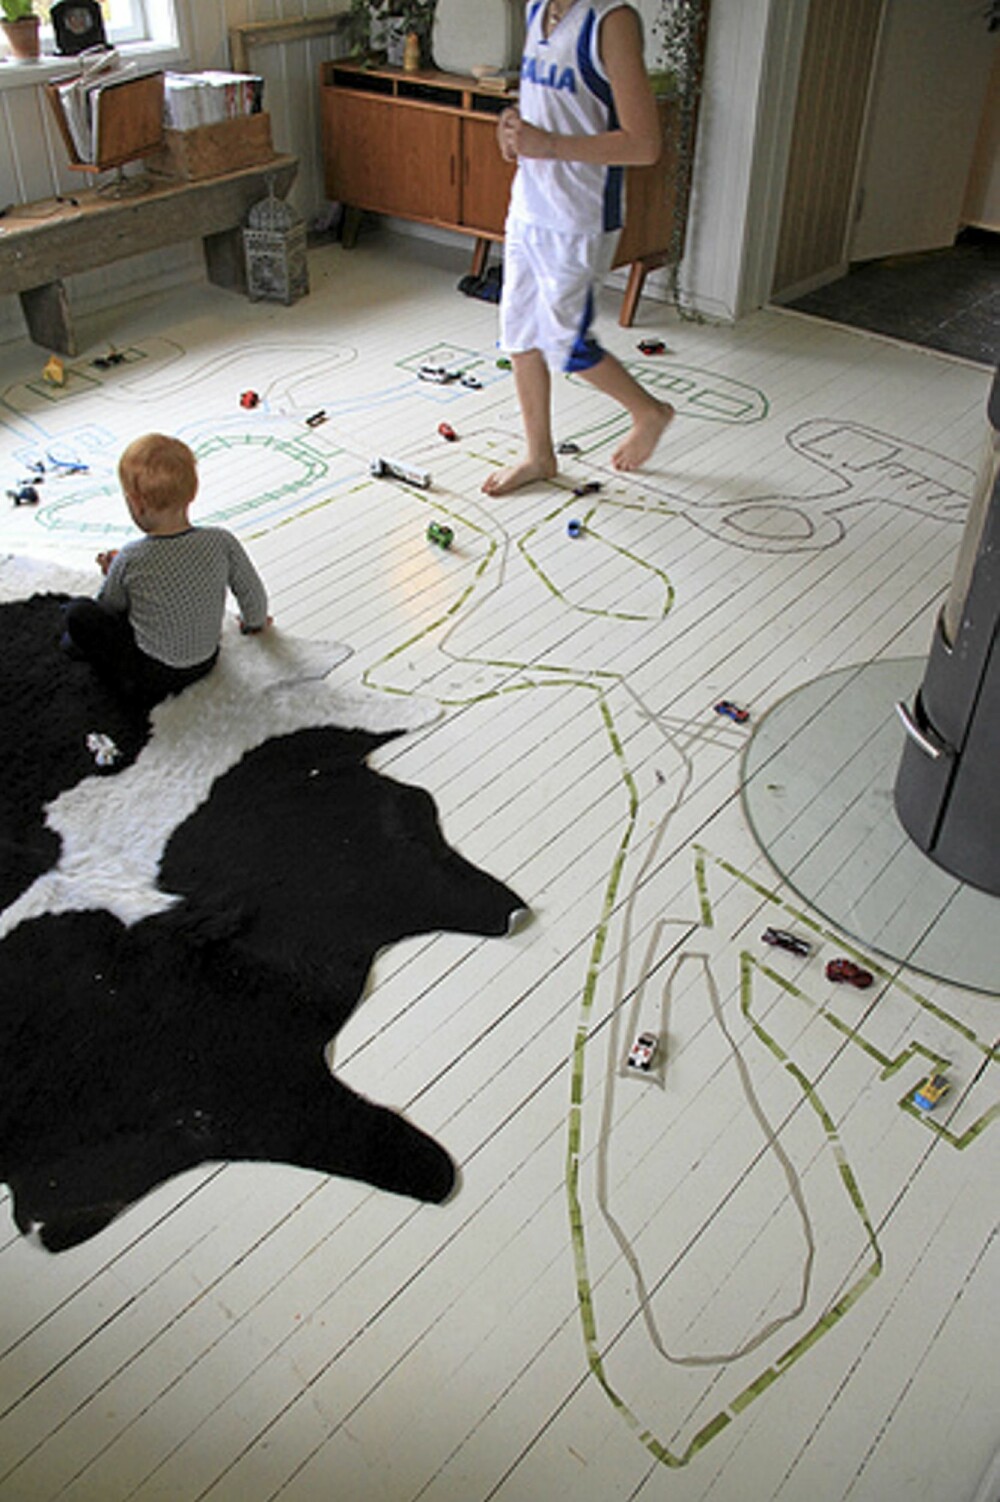 ELLEVILT: Kunstverket på gulv og sofa ble egenhendig laget og kreativt døpt av barna selv. Velkommen til Teip City!